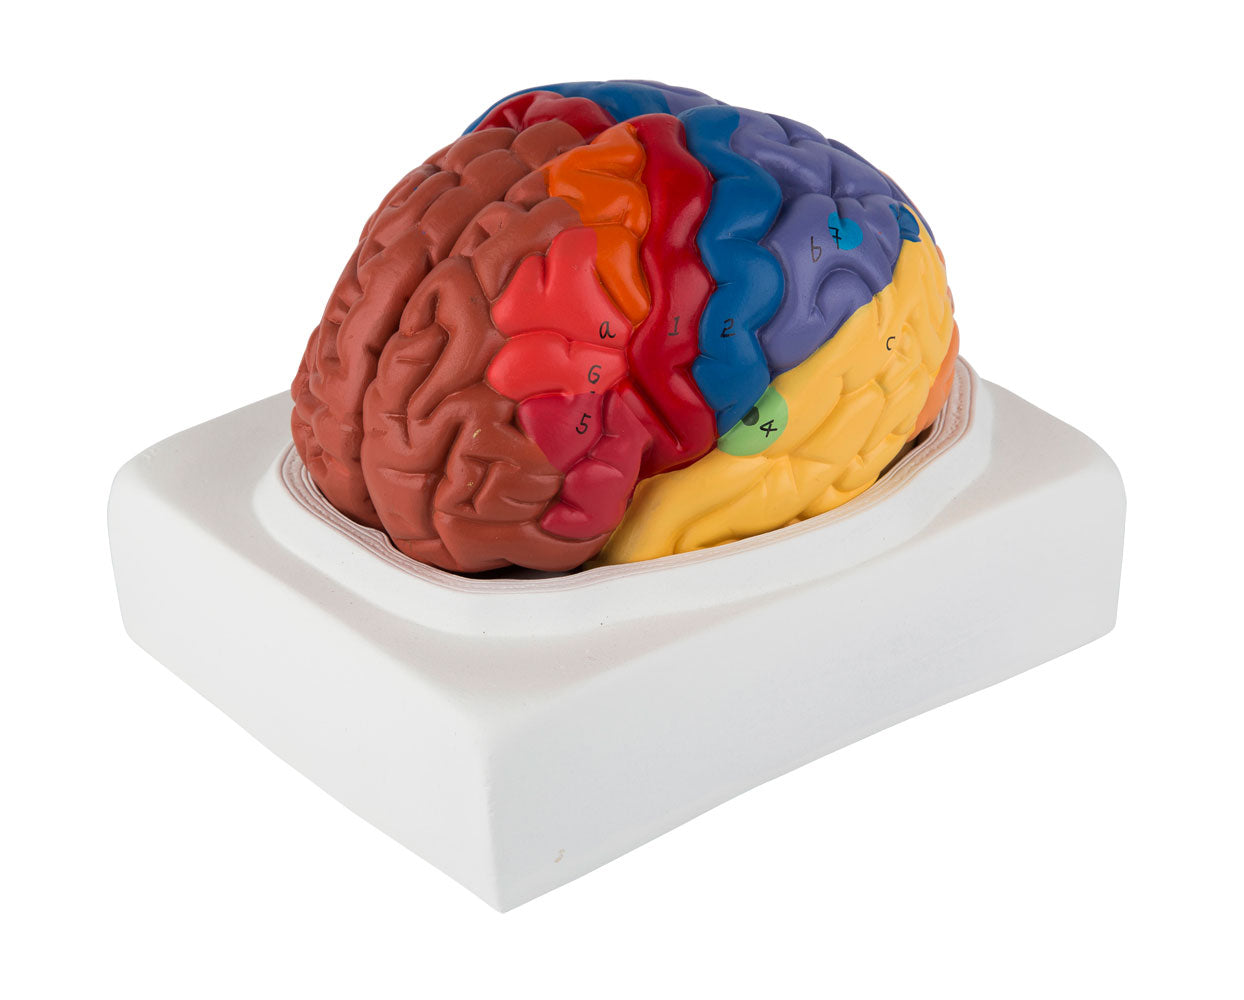 Enkel hjernemodel med de vigtigste områder i pædagogiske farver. Kan adskilles i 2 dele